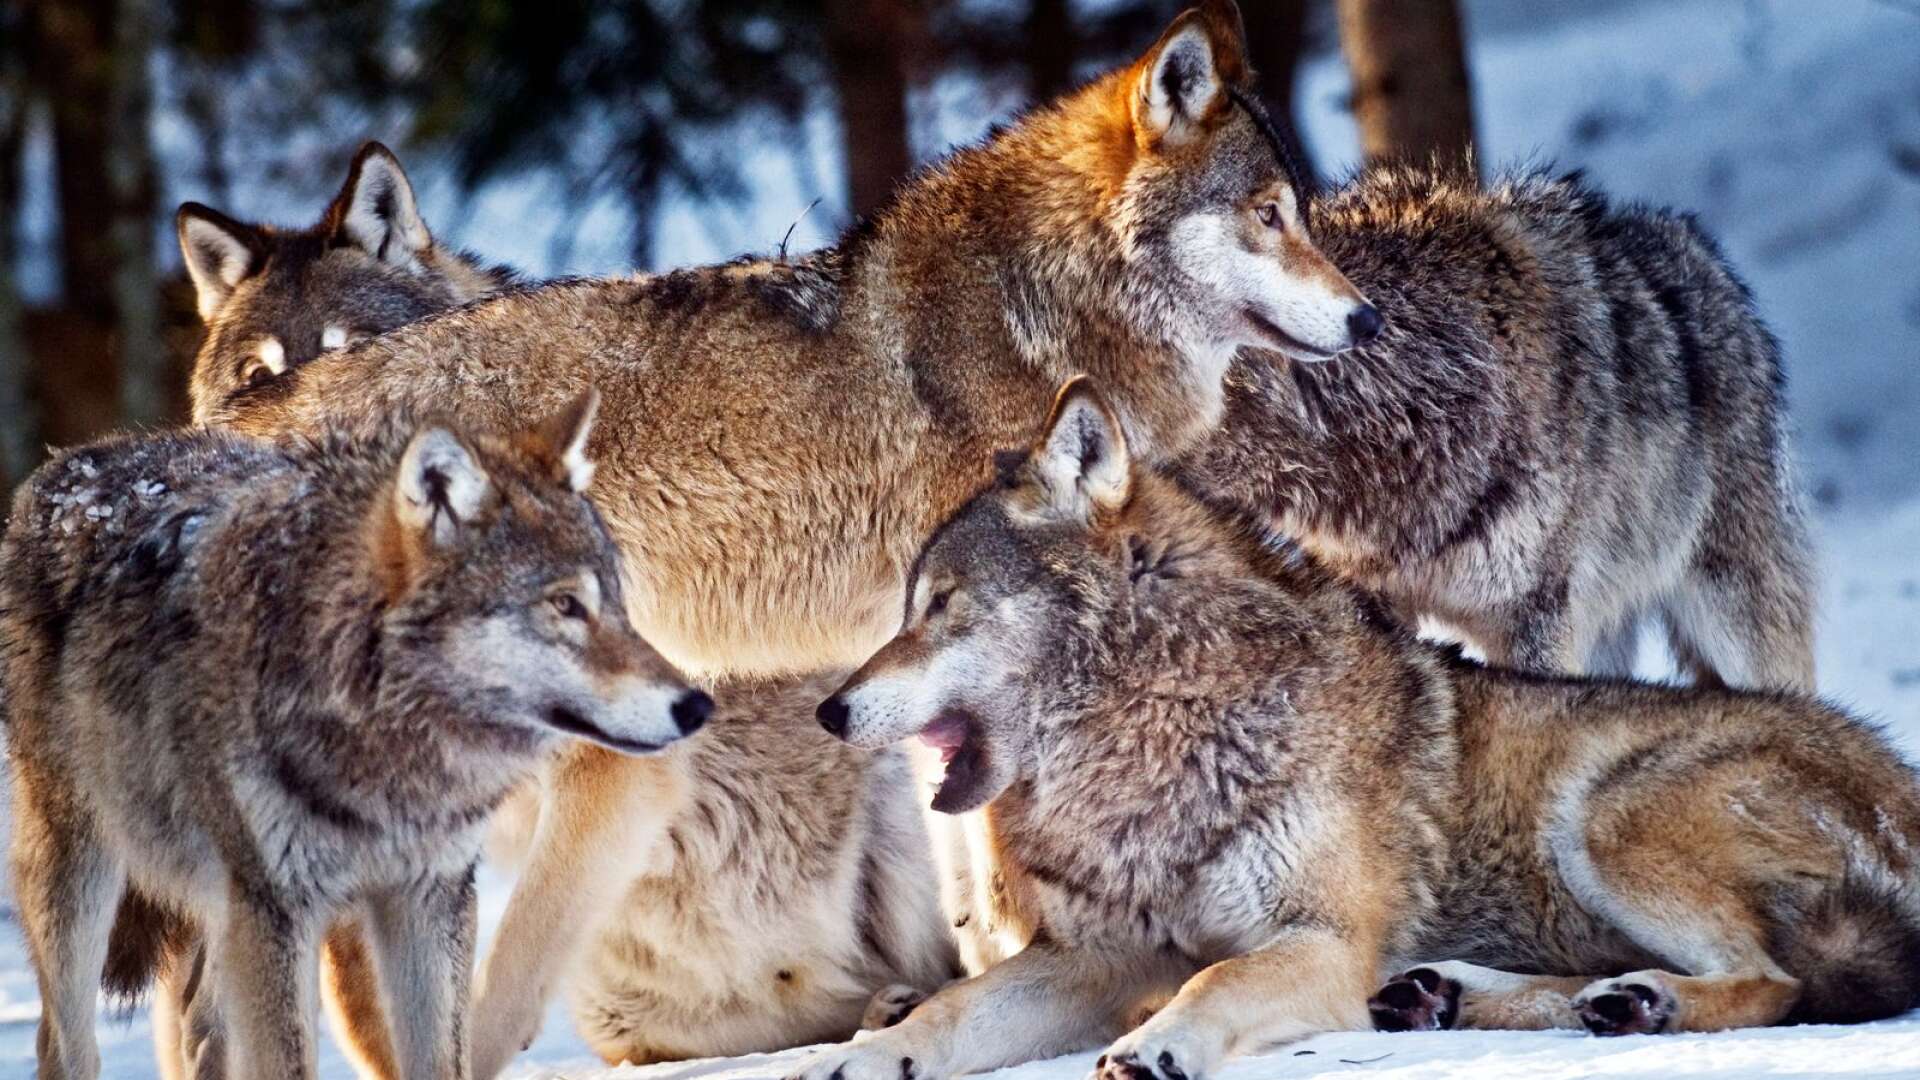 Norska regeringens beslut om licensjakt på 25 vargar i ulvesonen har fått klartecken av lagmansretten. Nu kan jakten starta även i den norska delen av Römskogsreviret.